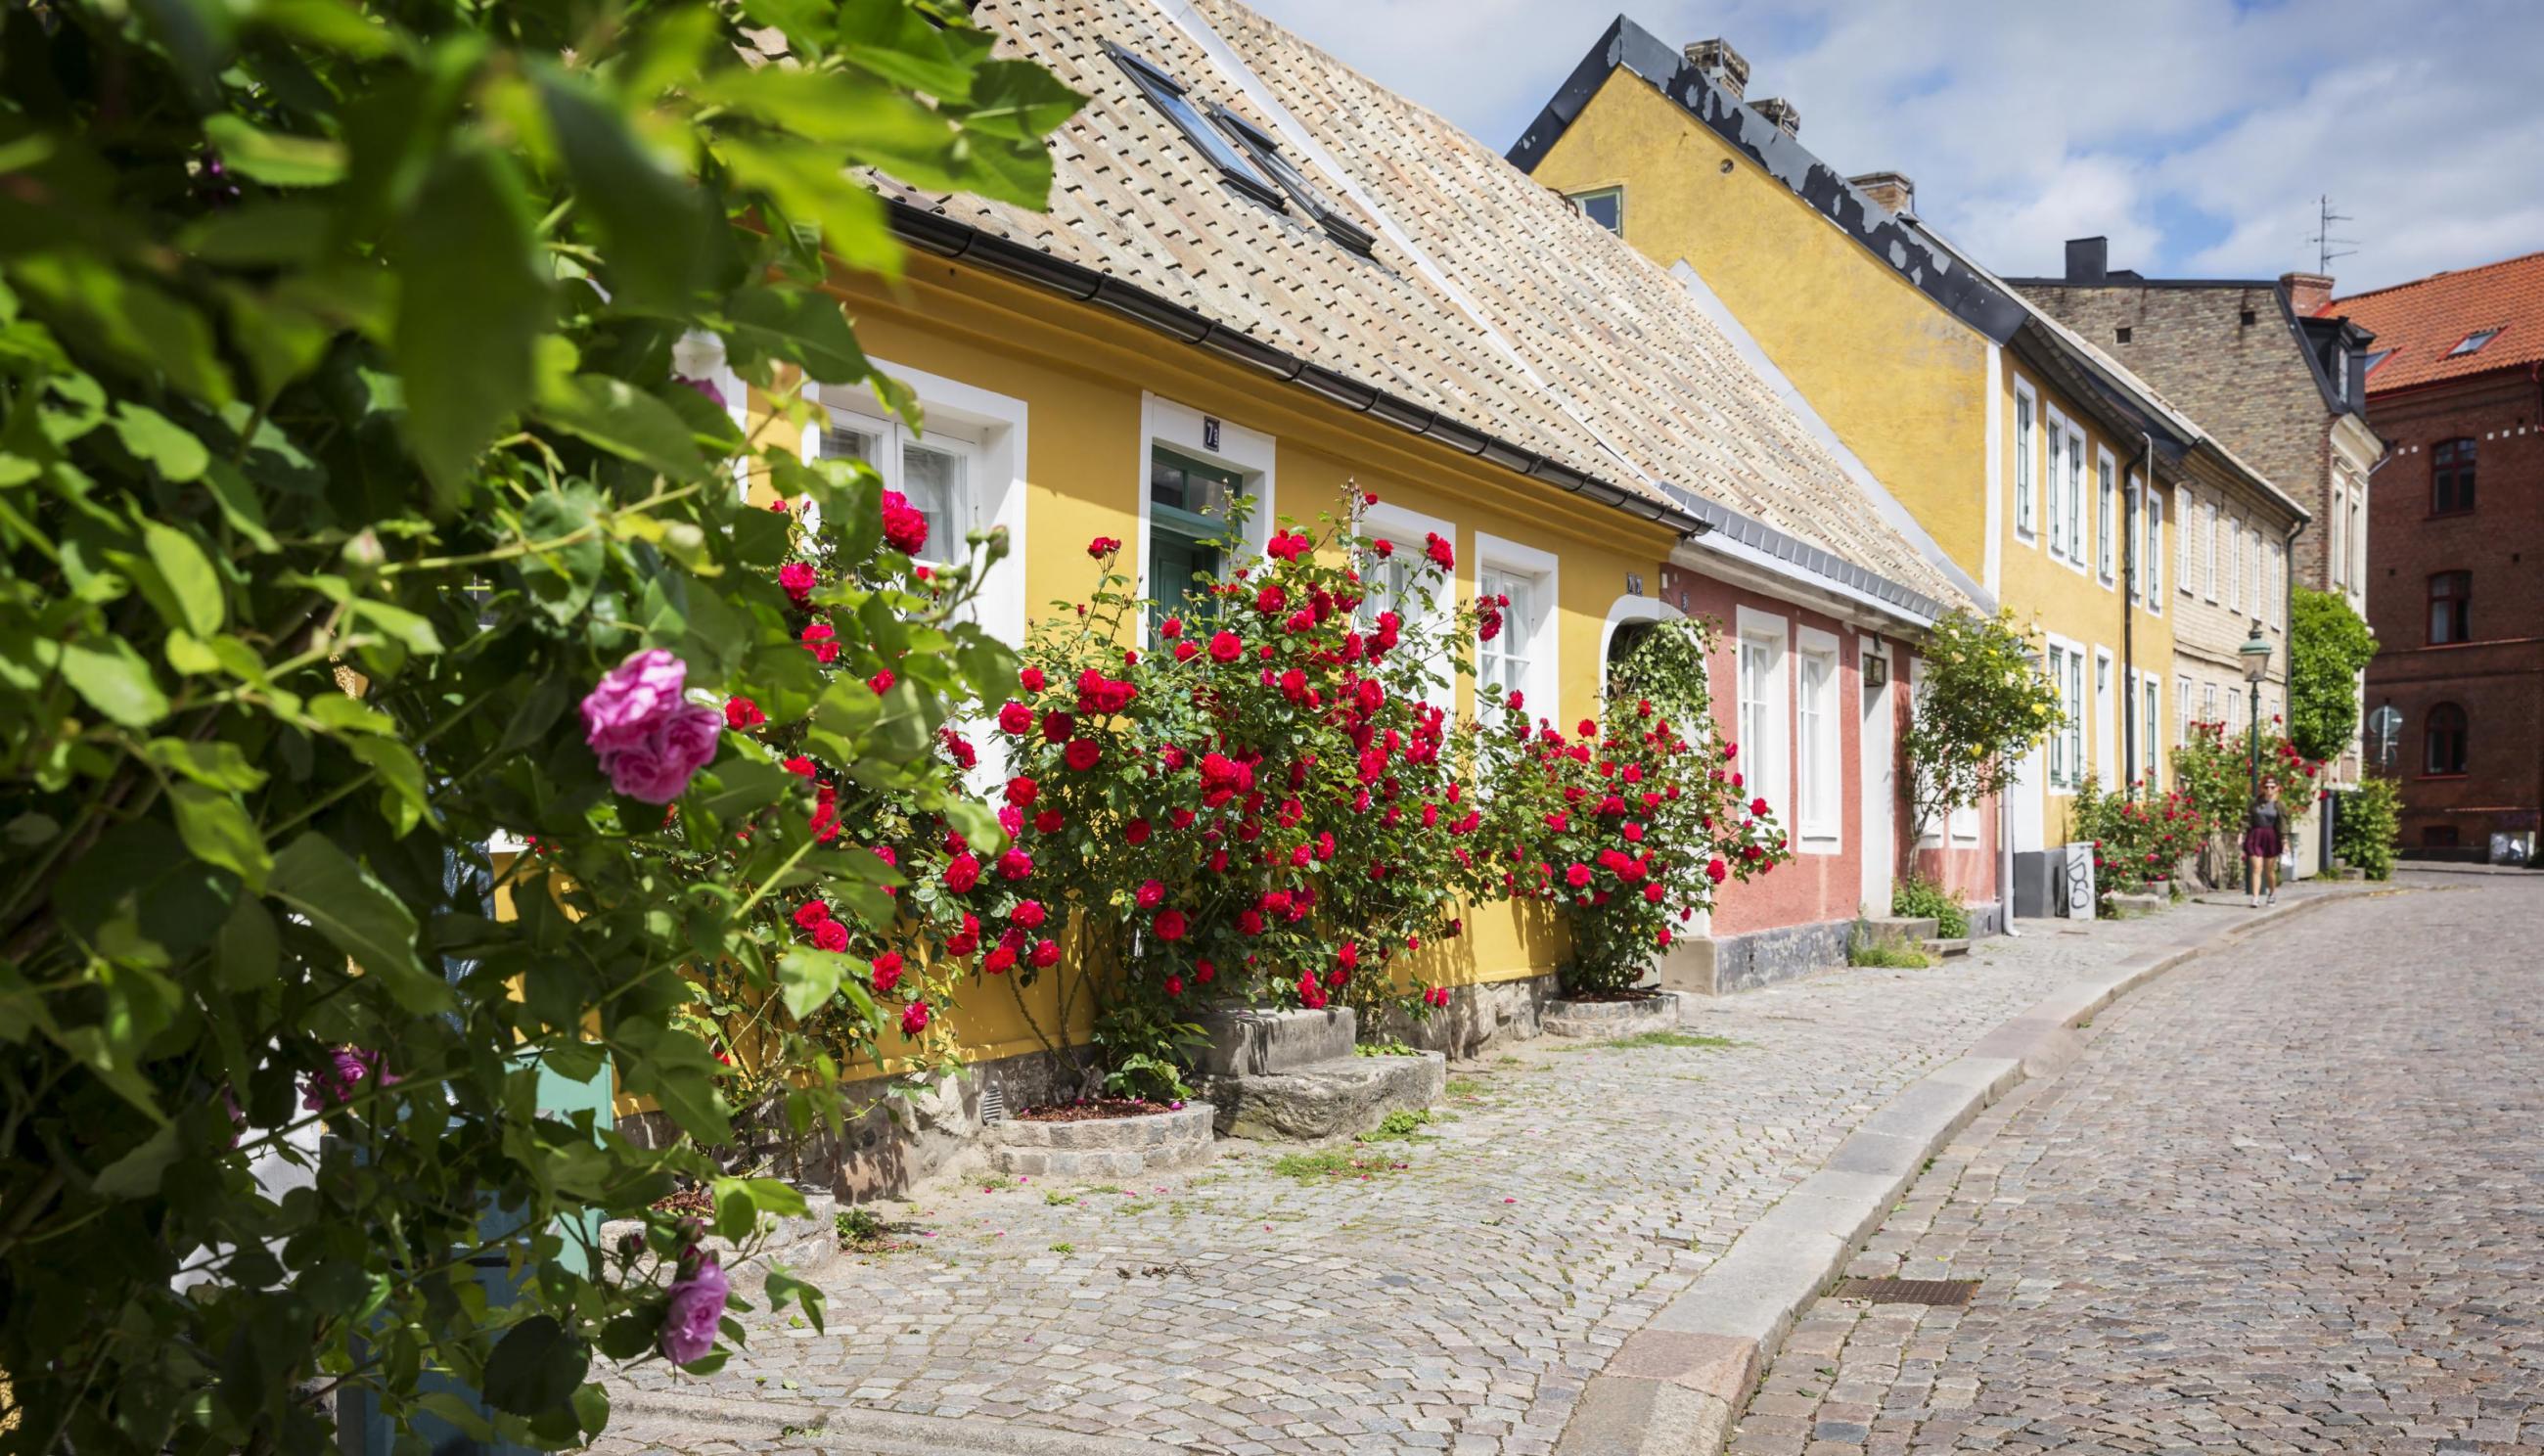 Färgglada och pittoreska hus på kullerstensgata i Lund